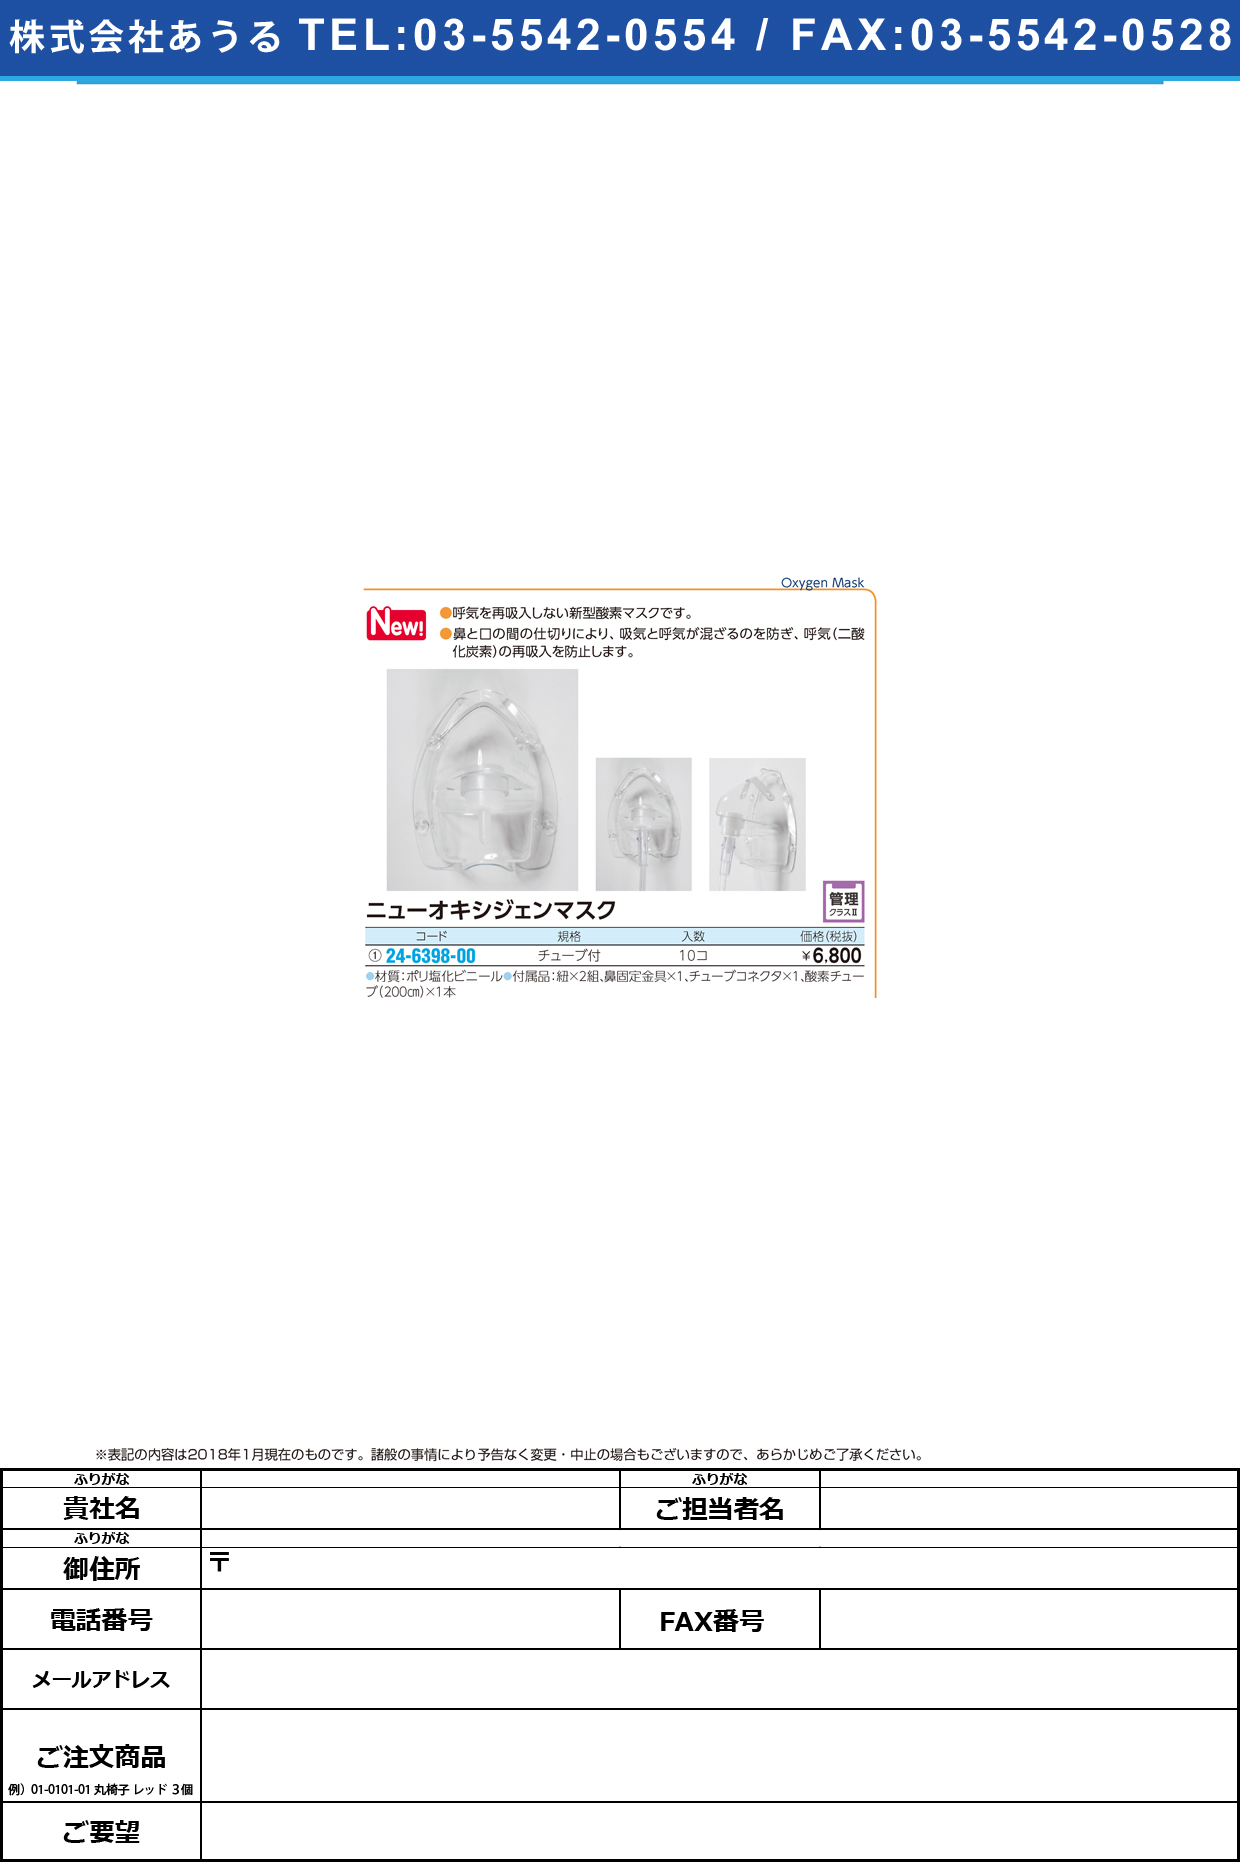 (24-6398-00)ニューオキシジェンマスク ﾁｭｰﾌﾞﾂｷ(10ｺｲﾘ) ﾆｭｰｵｷｼｼﾞｪﾝﾏｽｸ【1箱単位】【2018年カタログ商品】